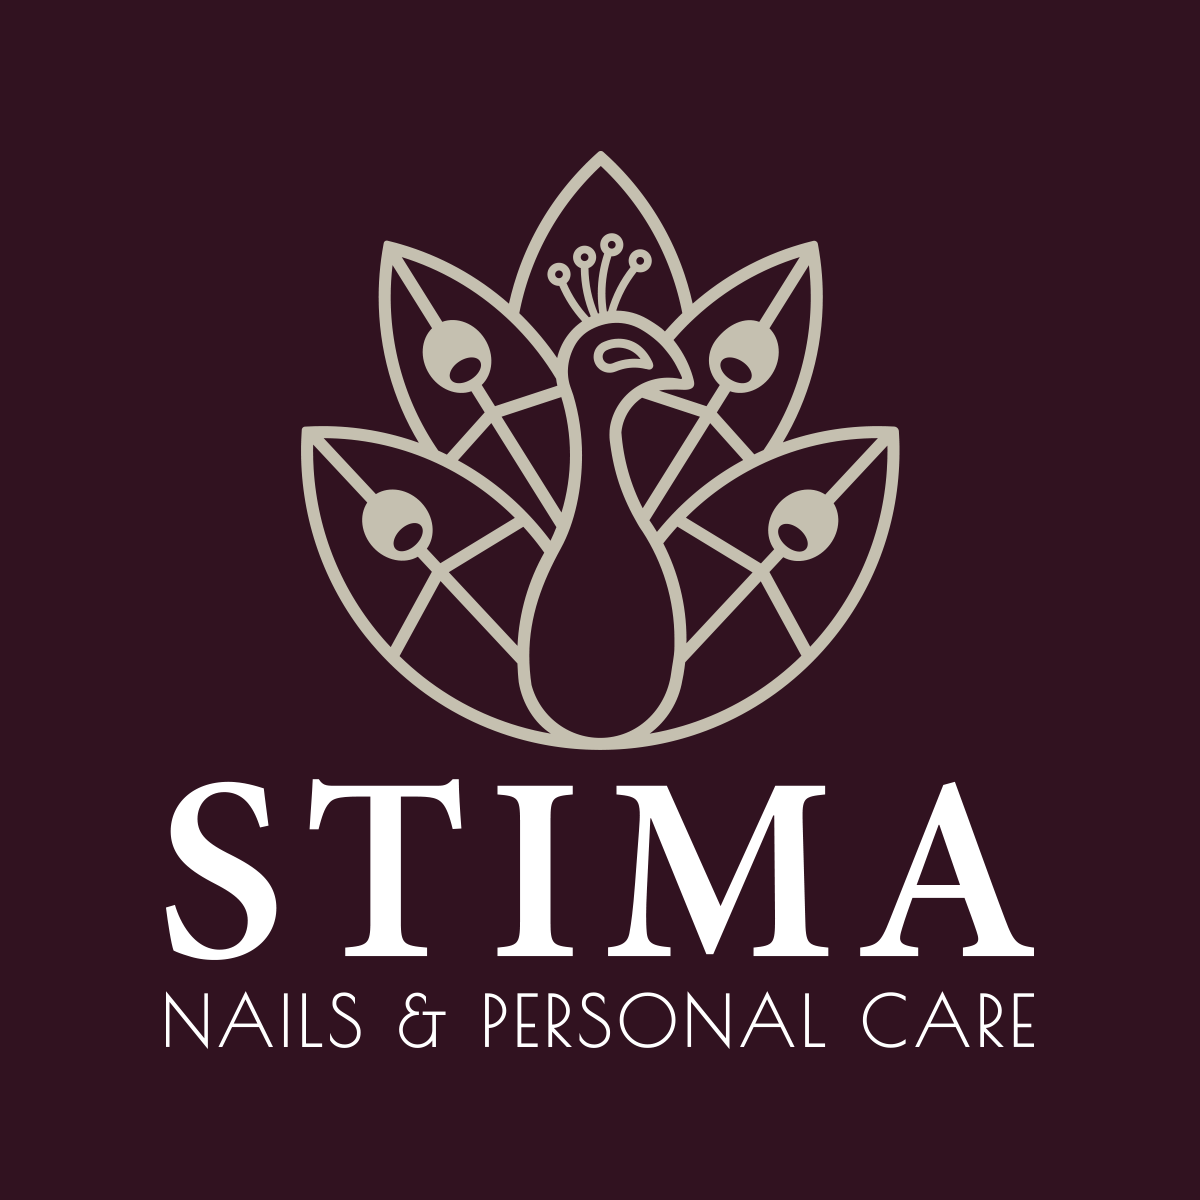 Stima Nails & Personal Care